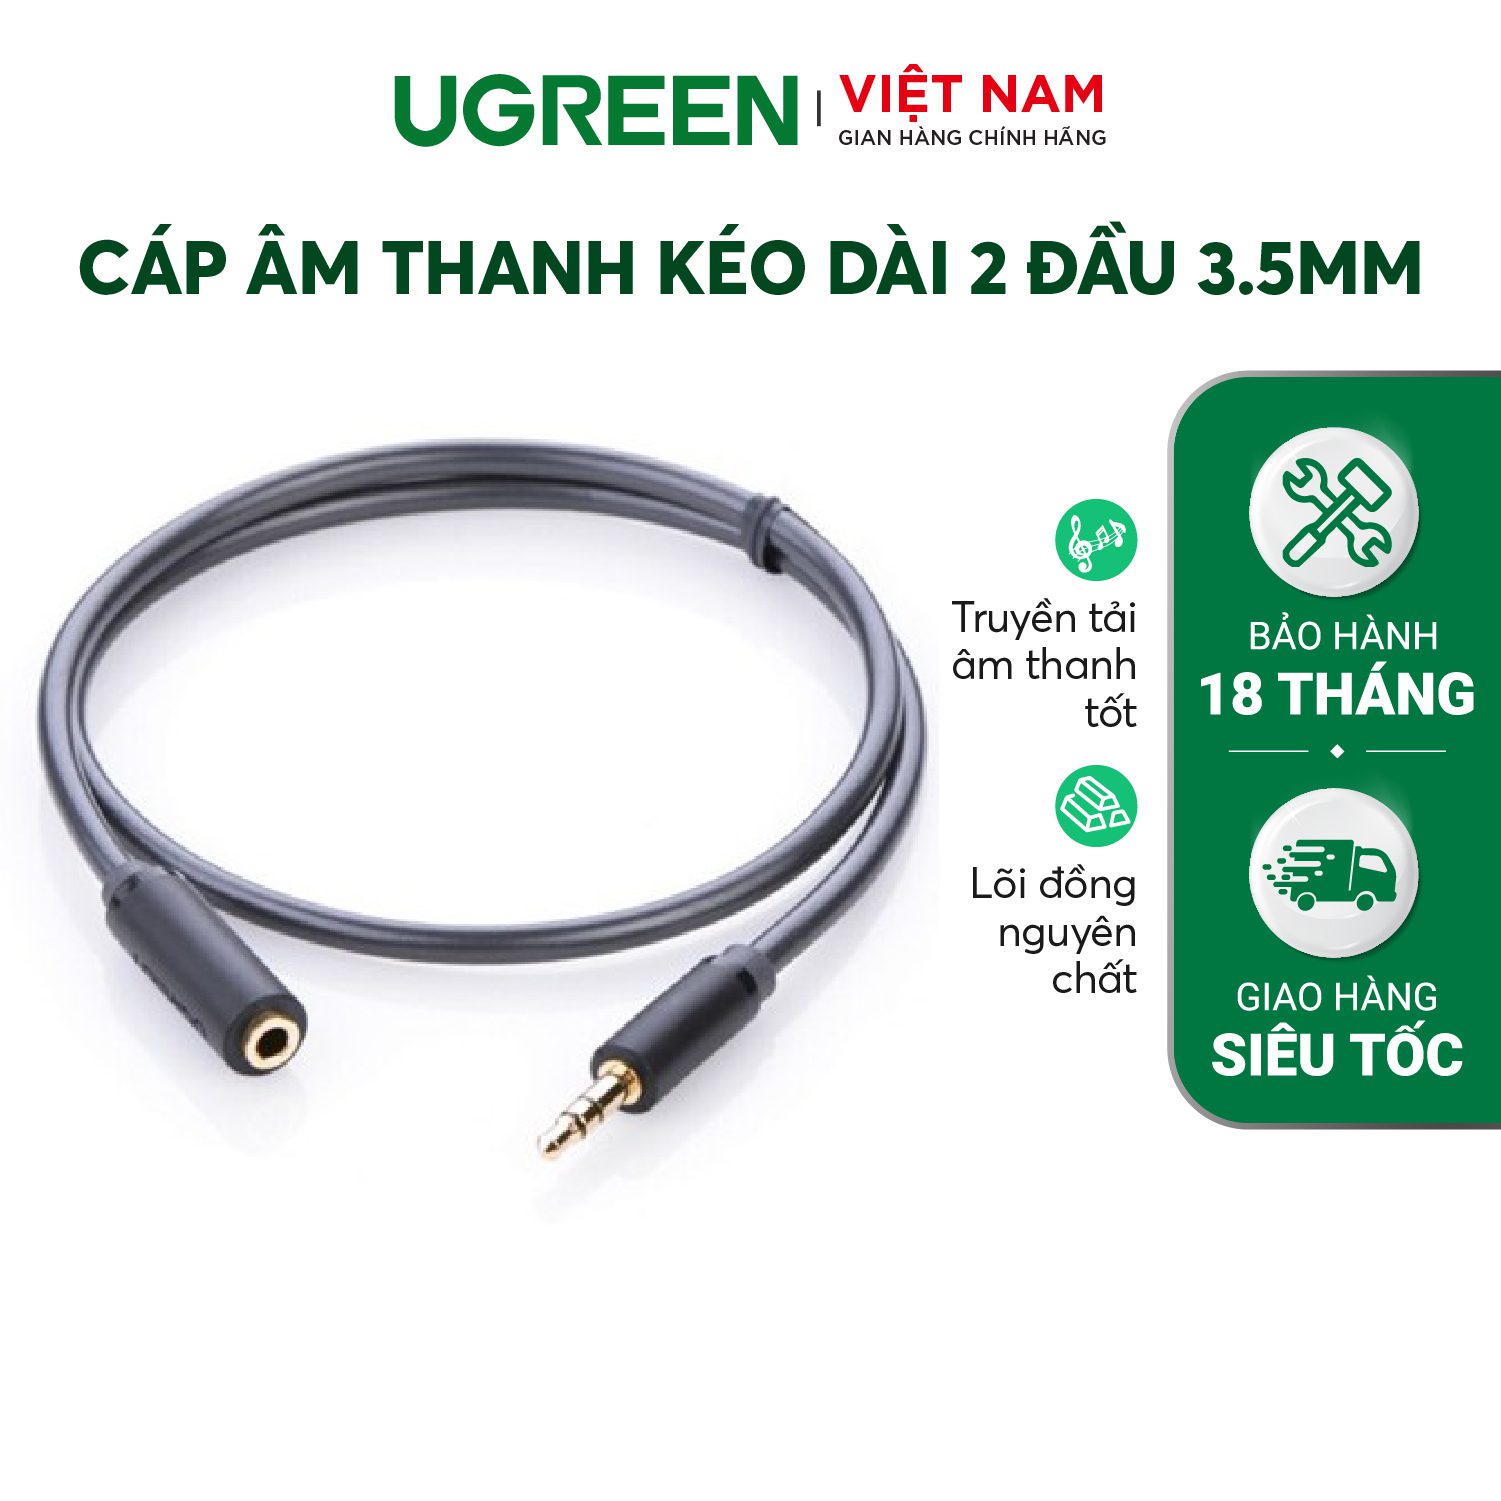 Cáp âm thanh kéo dài hai đầu chuẩn 3.5mm 1 đầu đực 1 đầu cái UGREEN AV124 – Ugreen Việt Nam